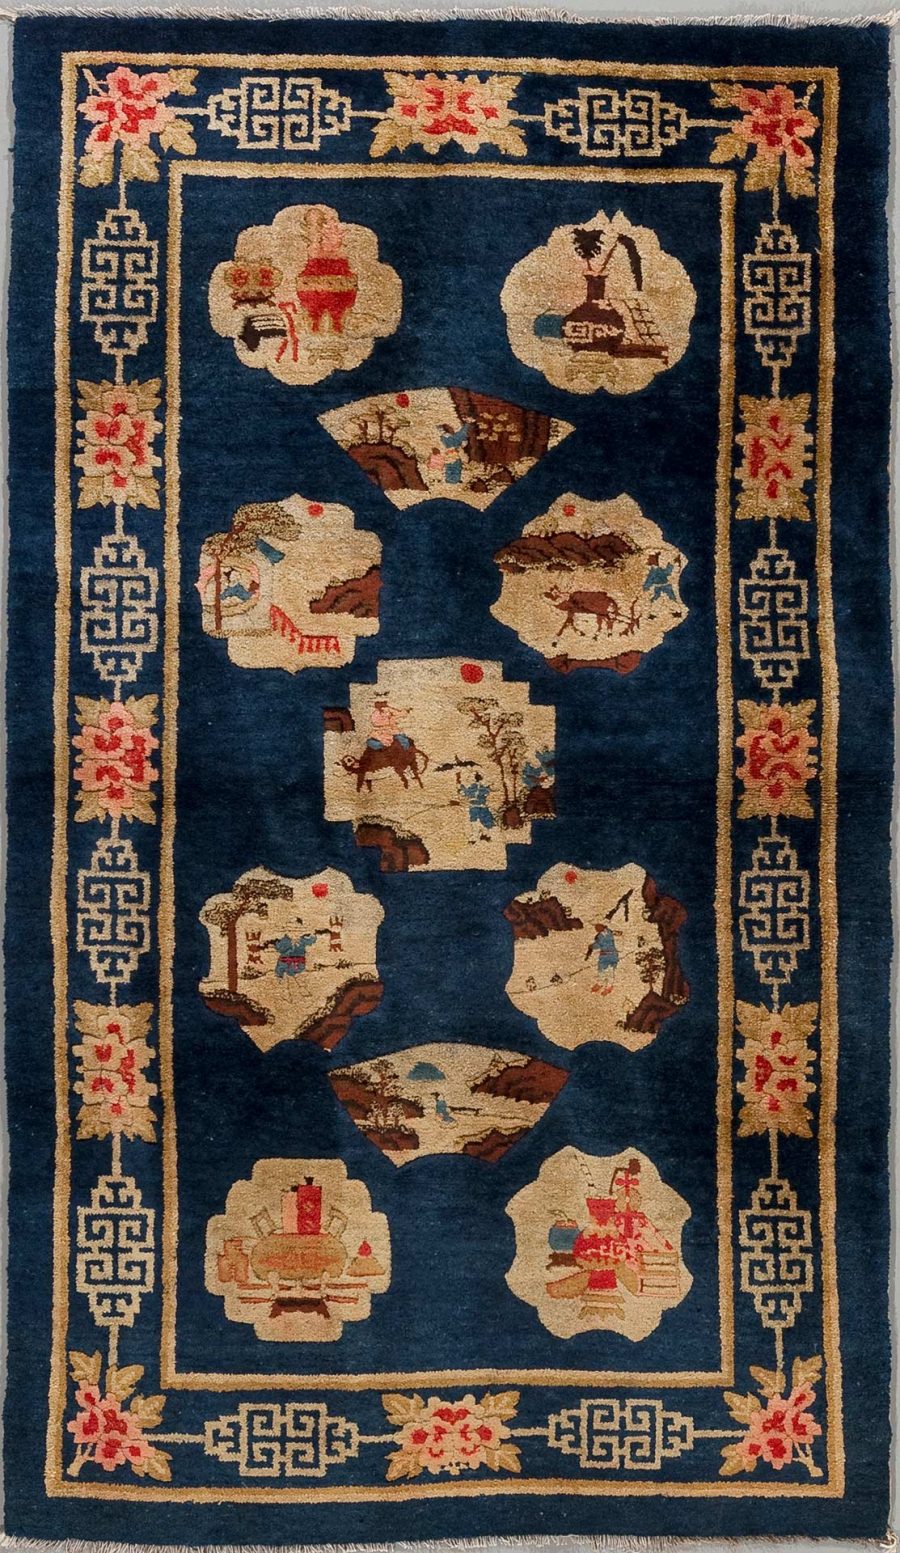 Antiker orientalischer Teppich mit tiefblauem Hintergrund und traditionellen Mustern, einschließlich mehrerer dekorativer Rahmen mit Blumen und geometrischen Designs sowie zentralen Illustrationen, die Szenen aus dem Alltagsleben zeigen, möglicherweise chinesischen Ursprungs.